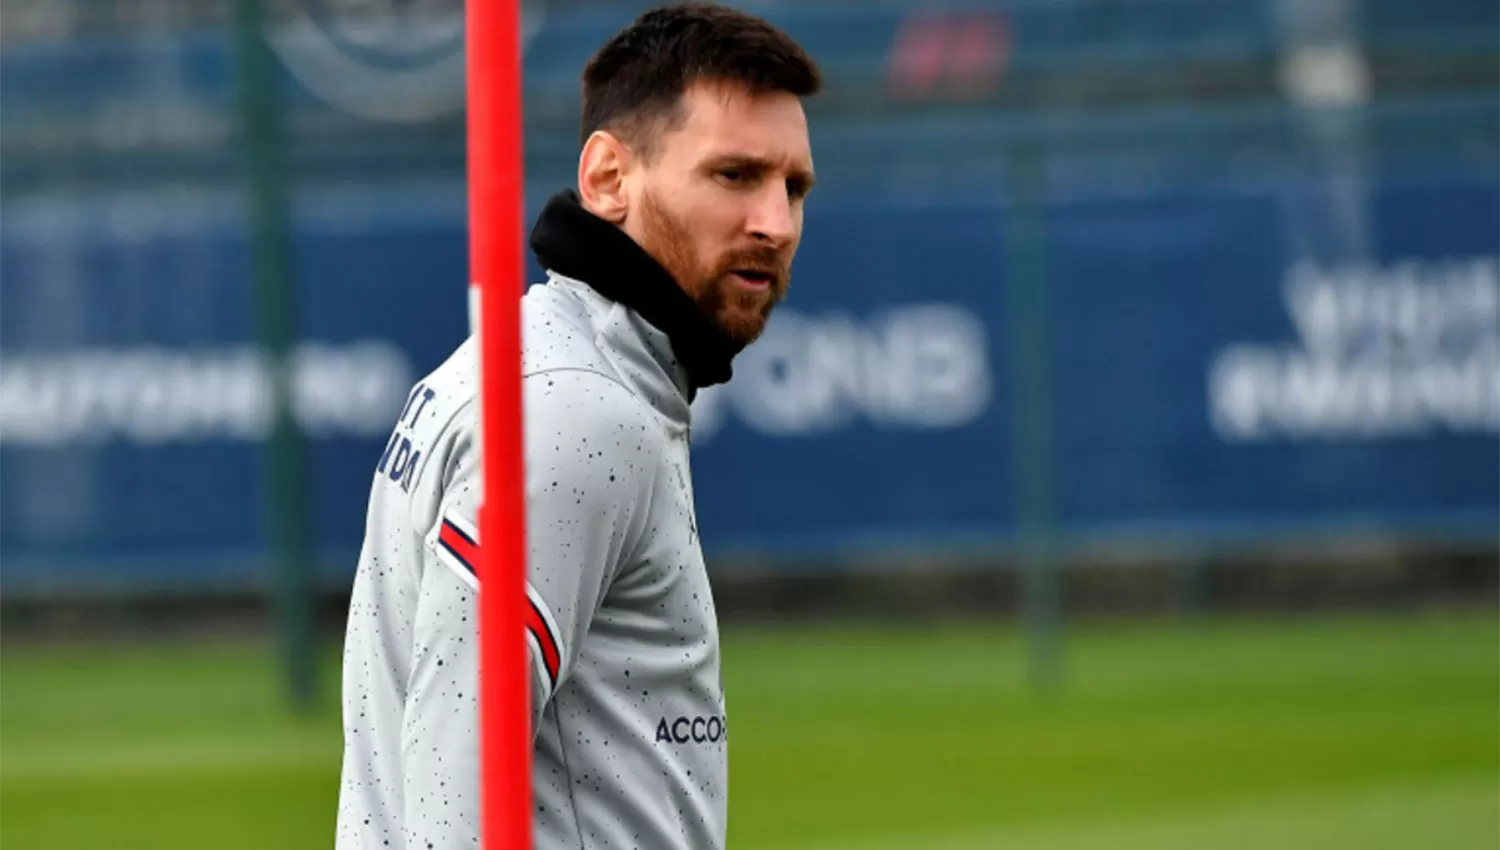 EN RECUPERACIÓN. En dos días Messi se someterá a nuevos estudios para conocer la evolución de su lesión.